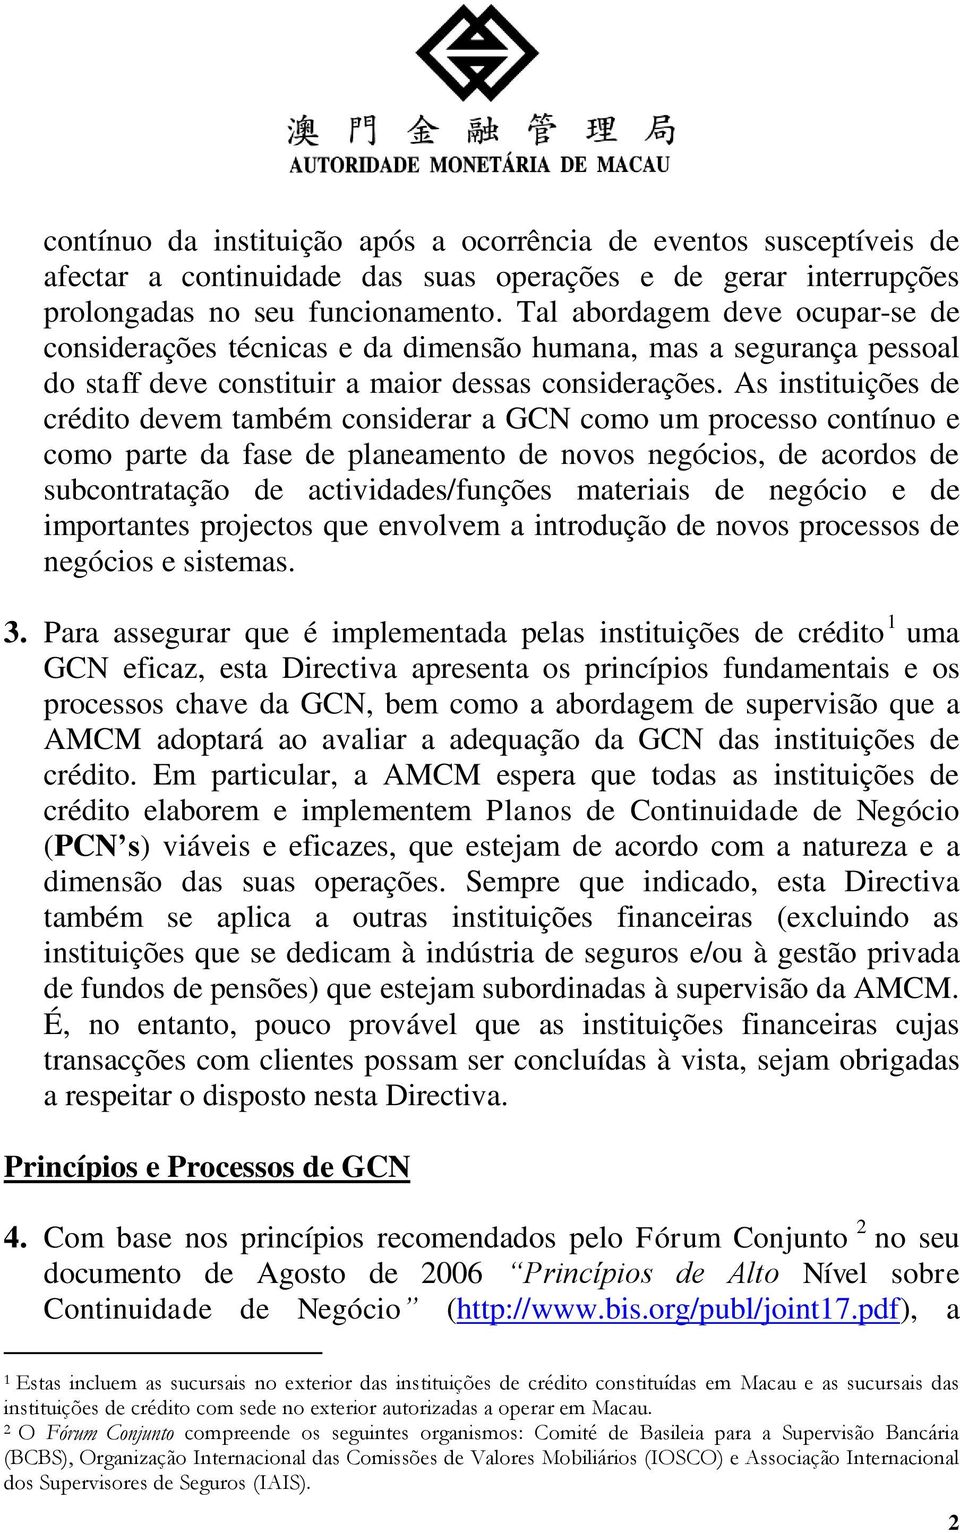 As instituições de crédito devem também considerar a GCN como um processo contínuo e como parte da fase de planeamento de novos negócios, de acordos de subcontratação de actividades/funções materiais